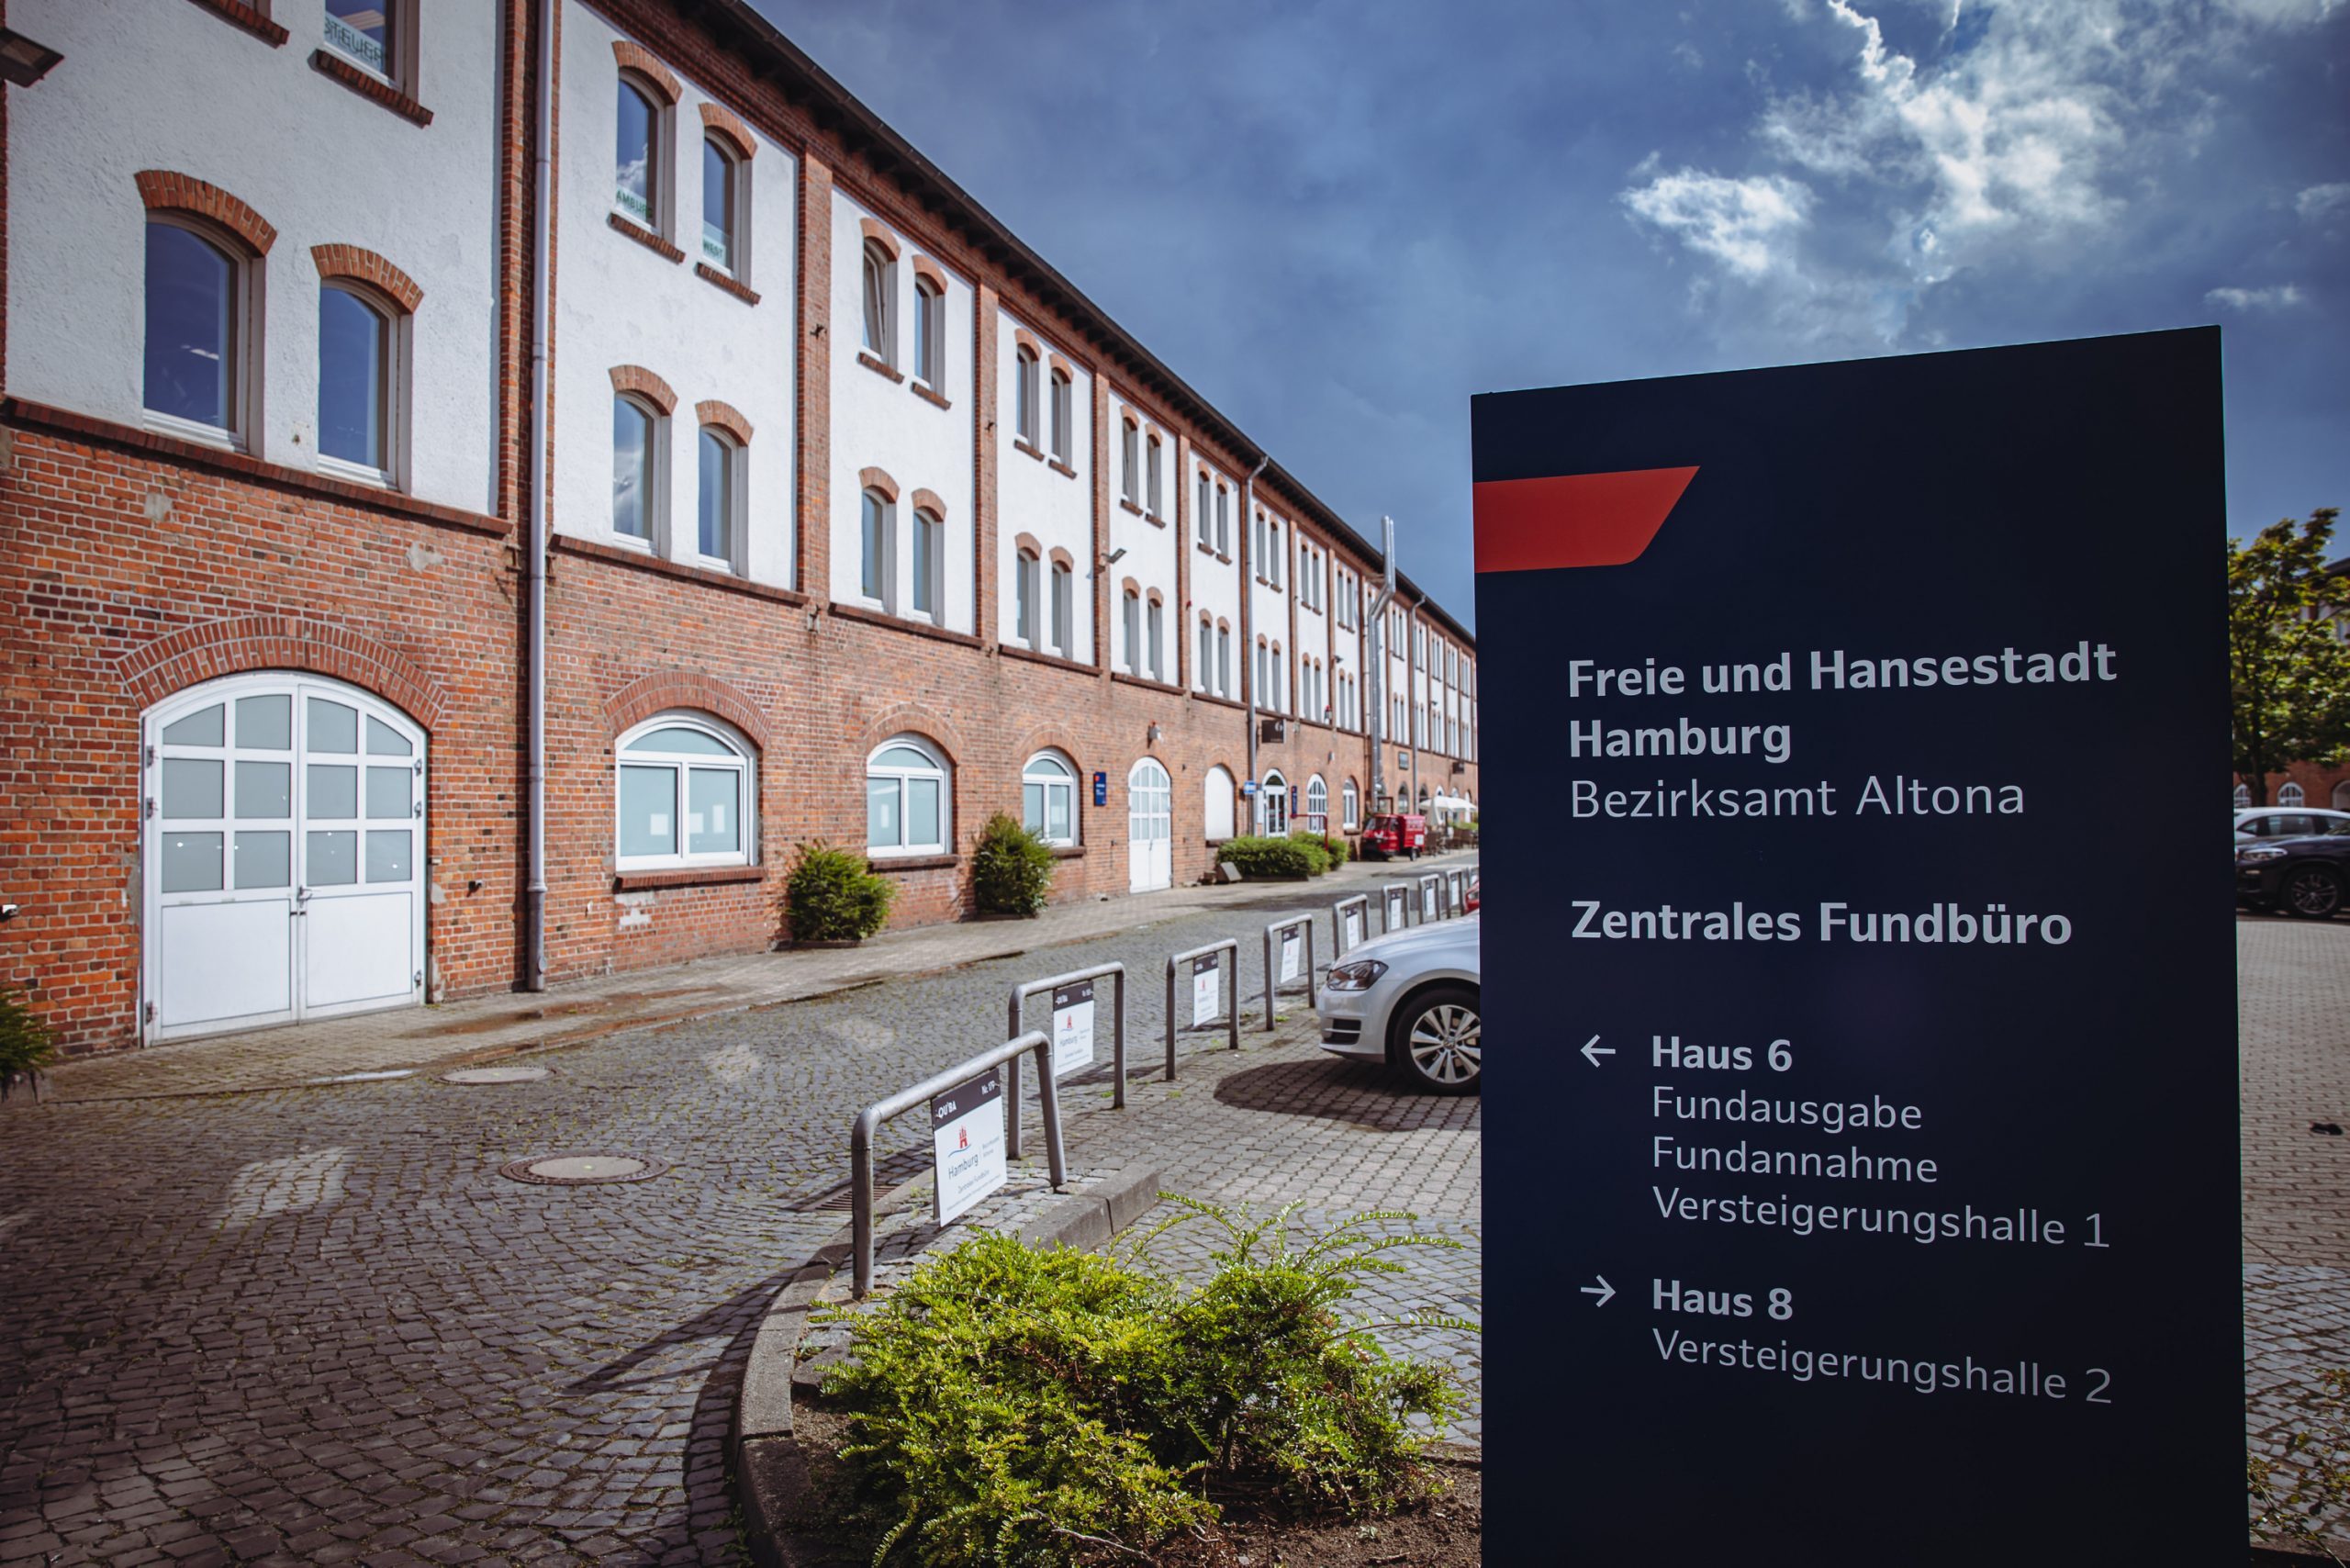 Am Dienstag wurde das neue Fundbüro in Hamburg eingeweiht – es ist das größte in Deutschland.